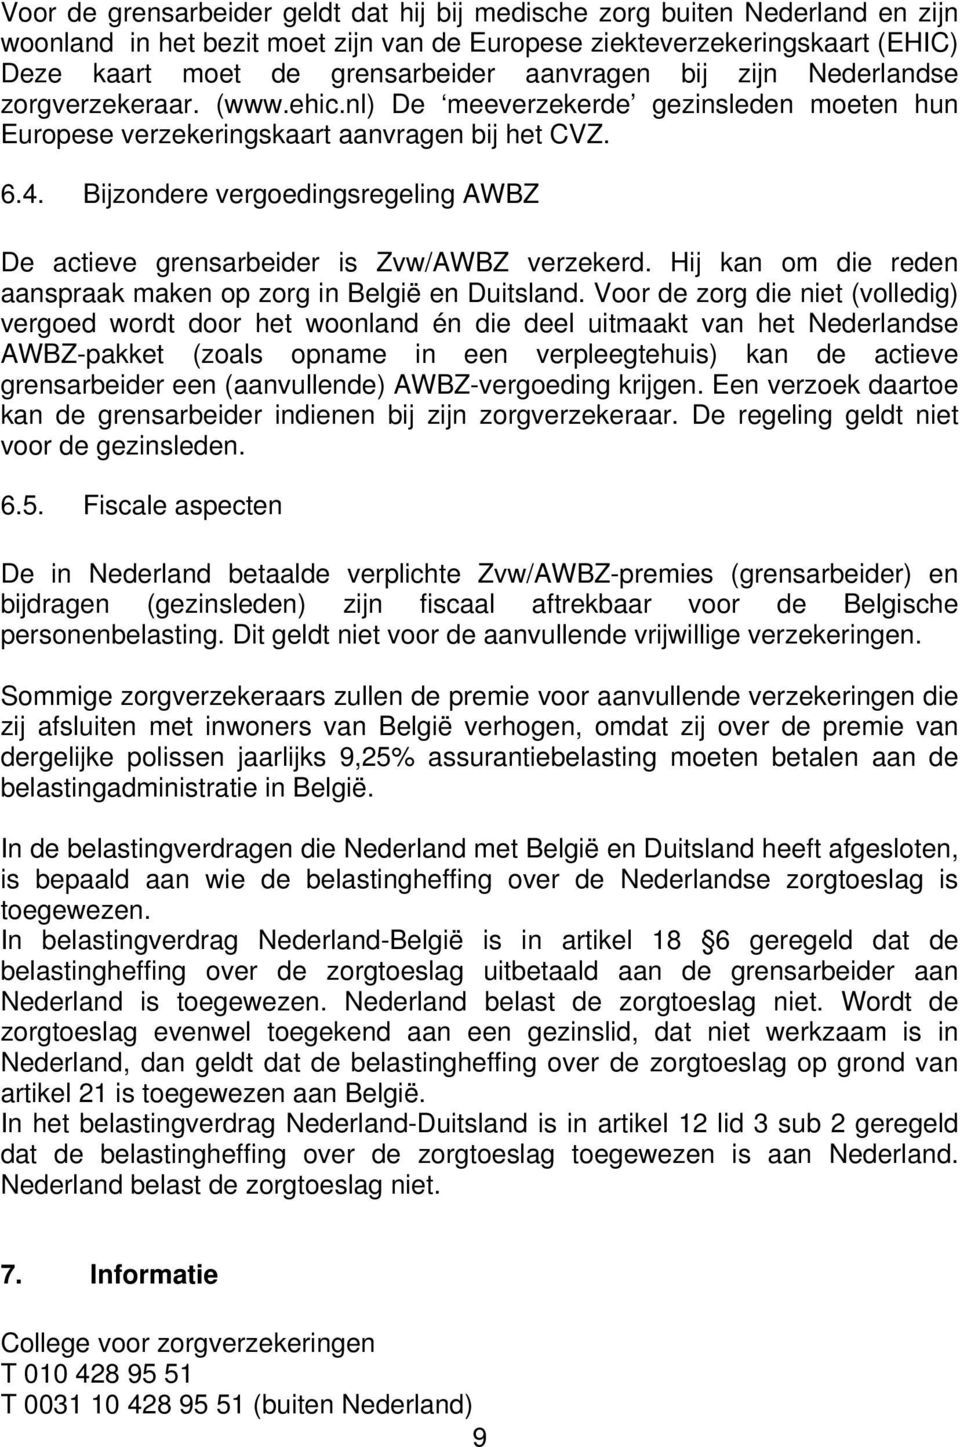 Bijzondere vergoedingsregeling AWBZ De actieve grensarbeider is Zvw/AWBZ verzekerd. Hij kan om die reden aanspraak maken op zorg in België en Duitsland.